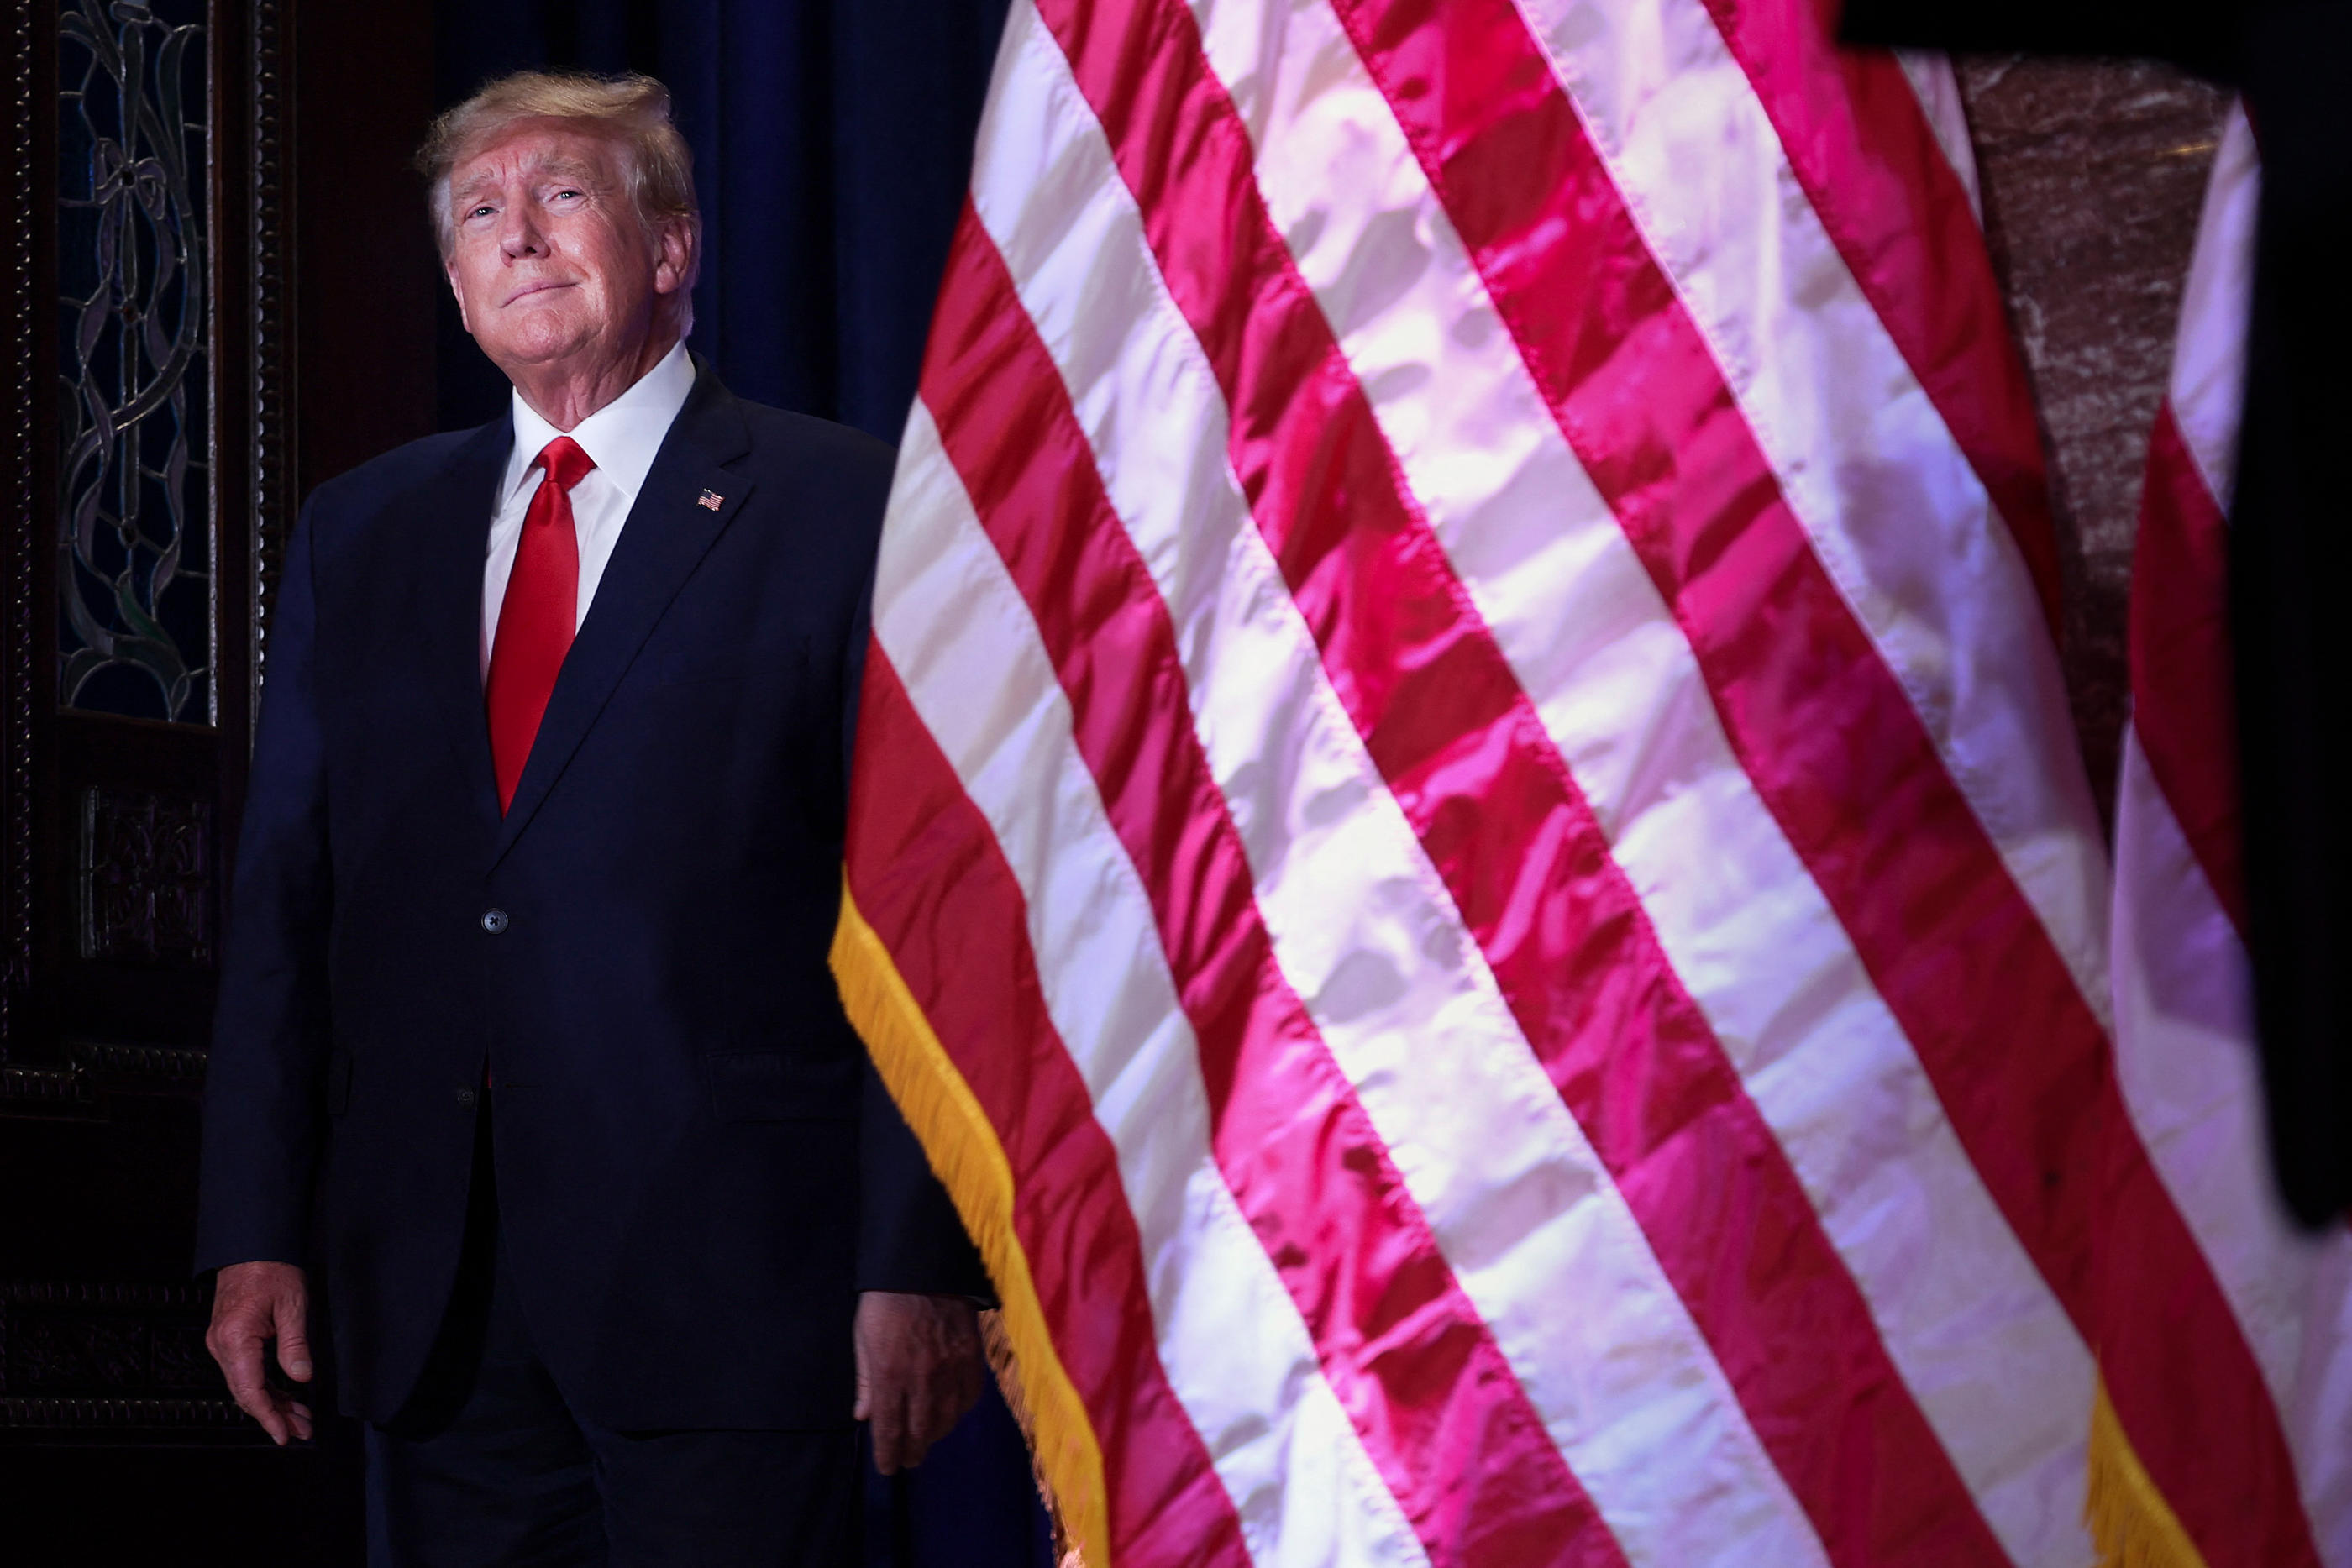 Donald Trump a été inculpé, jeudi, par un procureur new-yorkais. Une situation sans précédent pour un ancien président américain, qui pourrait, toutefois, rester sans grande conséquence pour son camp. AFP/Getty Images/Win McNamee